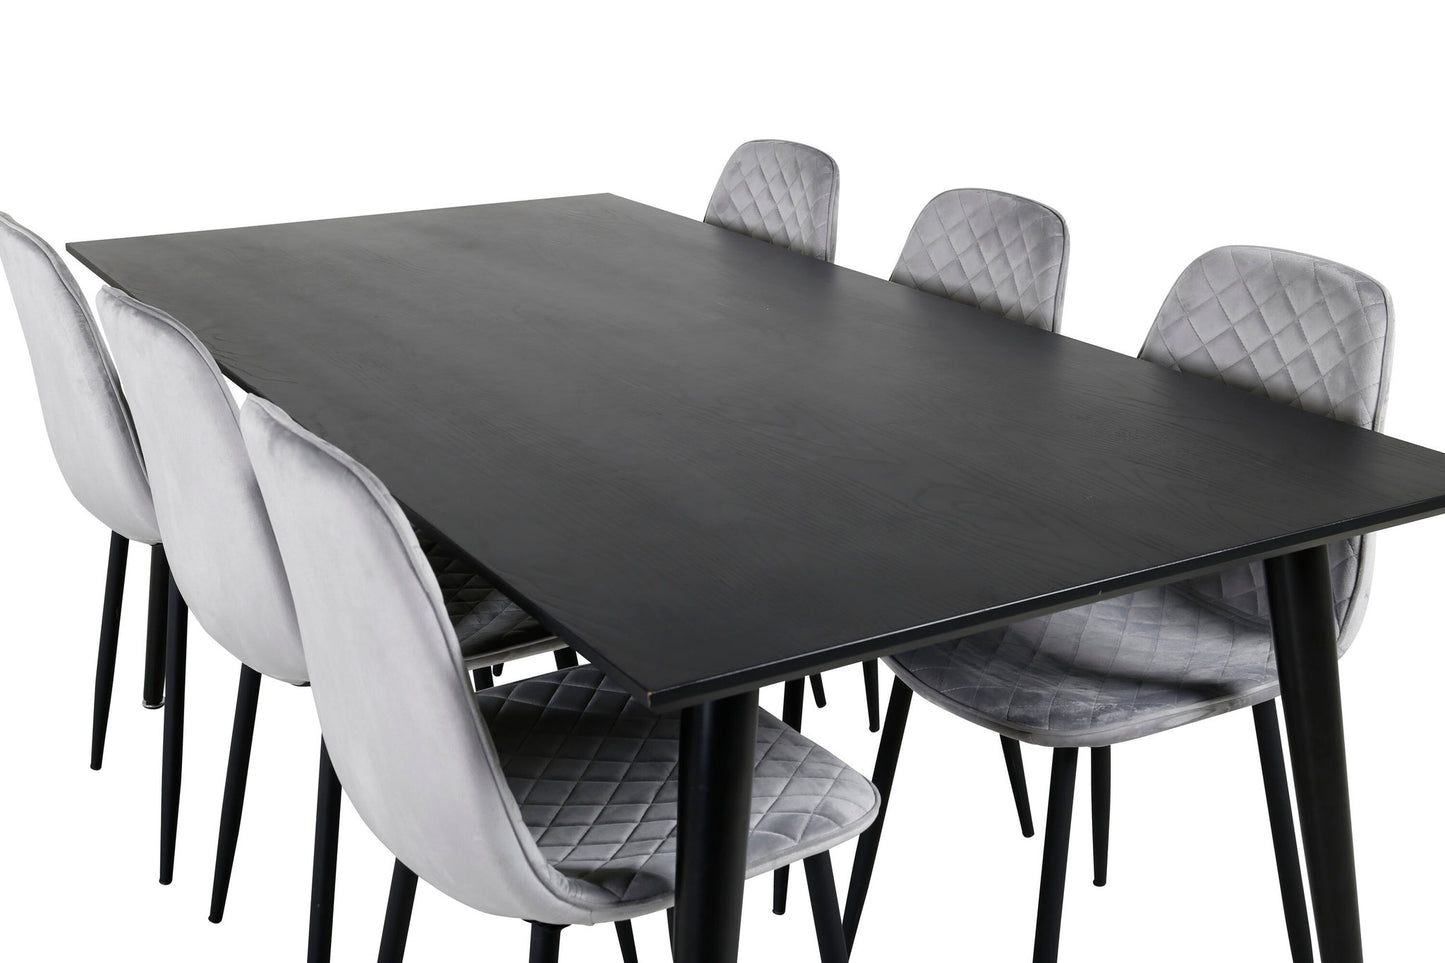 Dipp - Spisebord, 180*90cm - Sort finér / helt sorte ben - Polar Diamond Spisebordsstol - Sorte ben - Grå velour